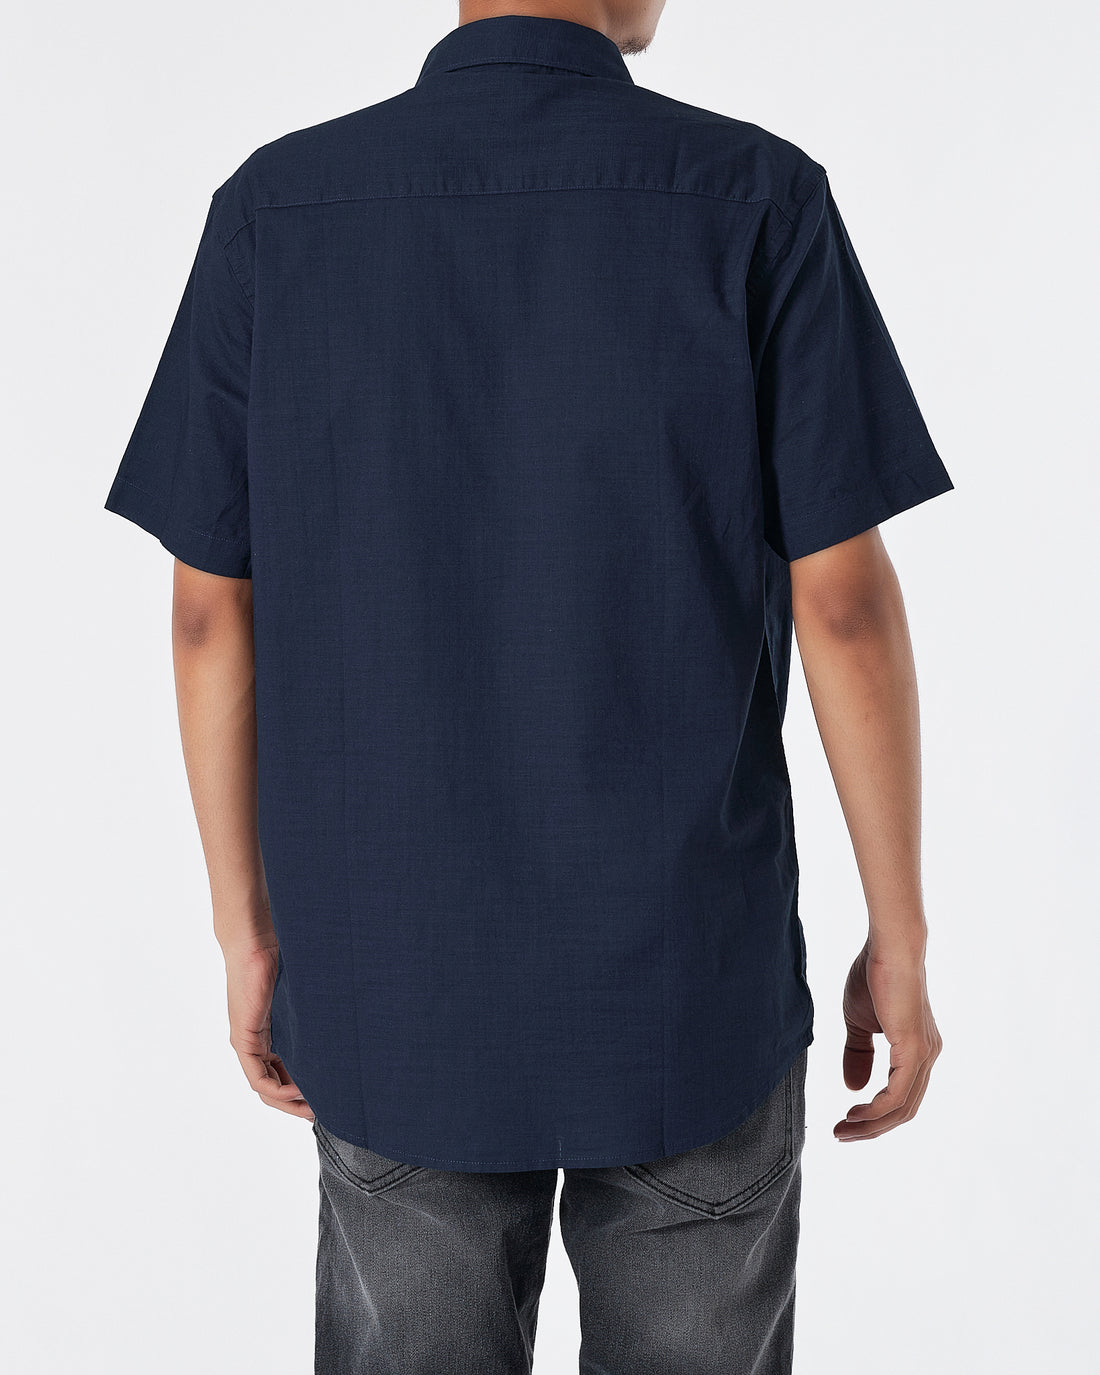 CK Linen Men Blue Shirts Short Sleeve 20.90